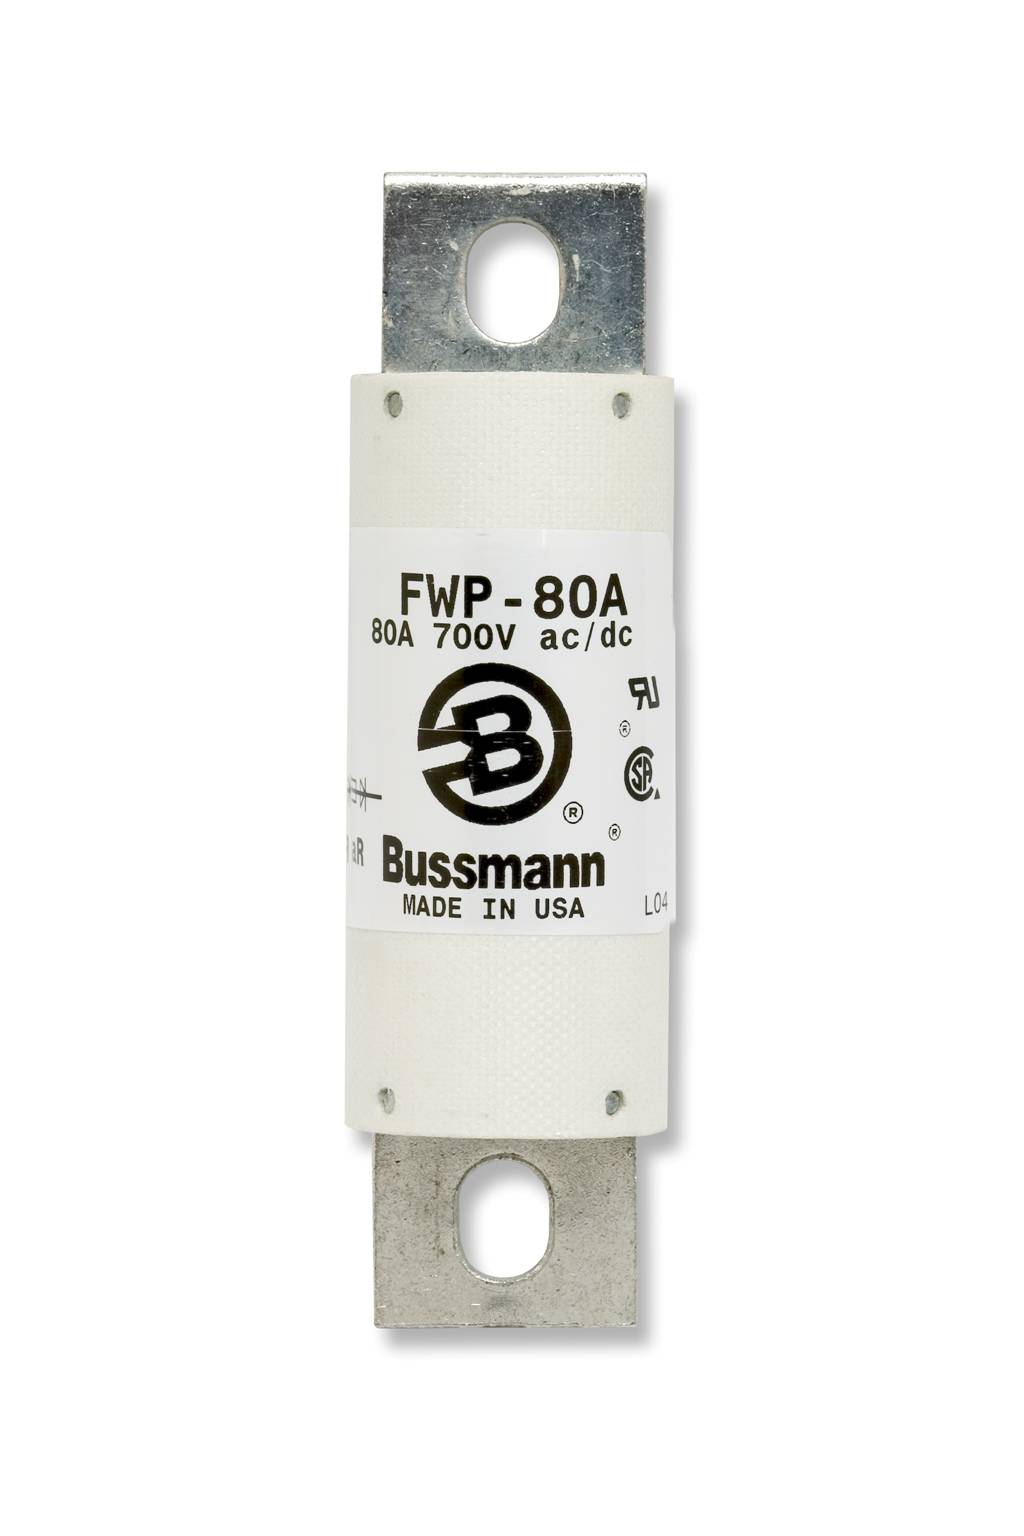 Part# FWP-60A  Manufacturer BUSSMANN  Part Type 700 Volt Fuse